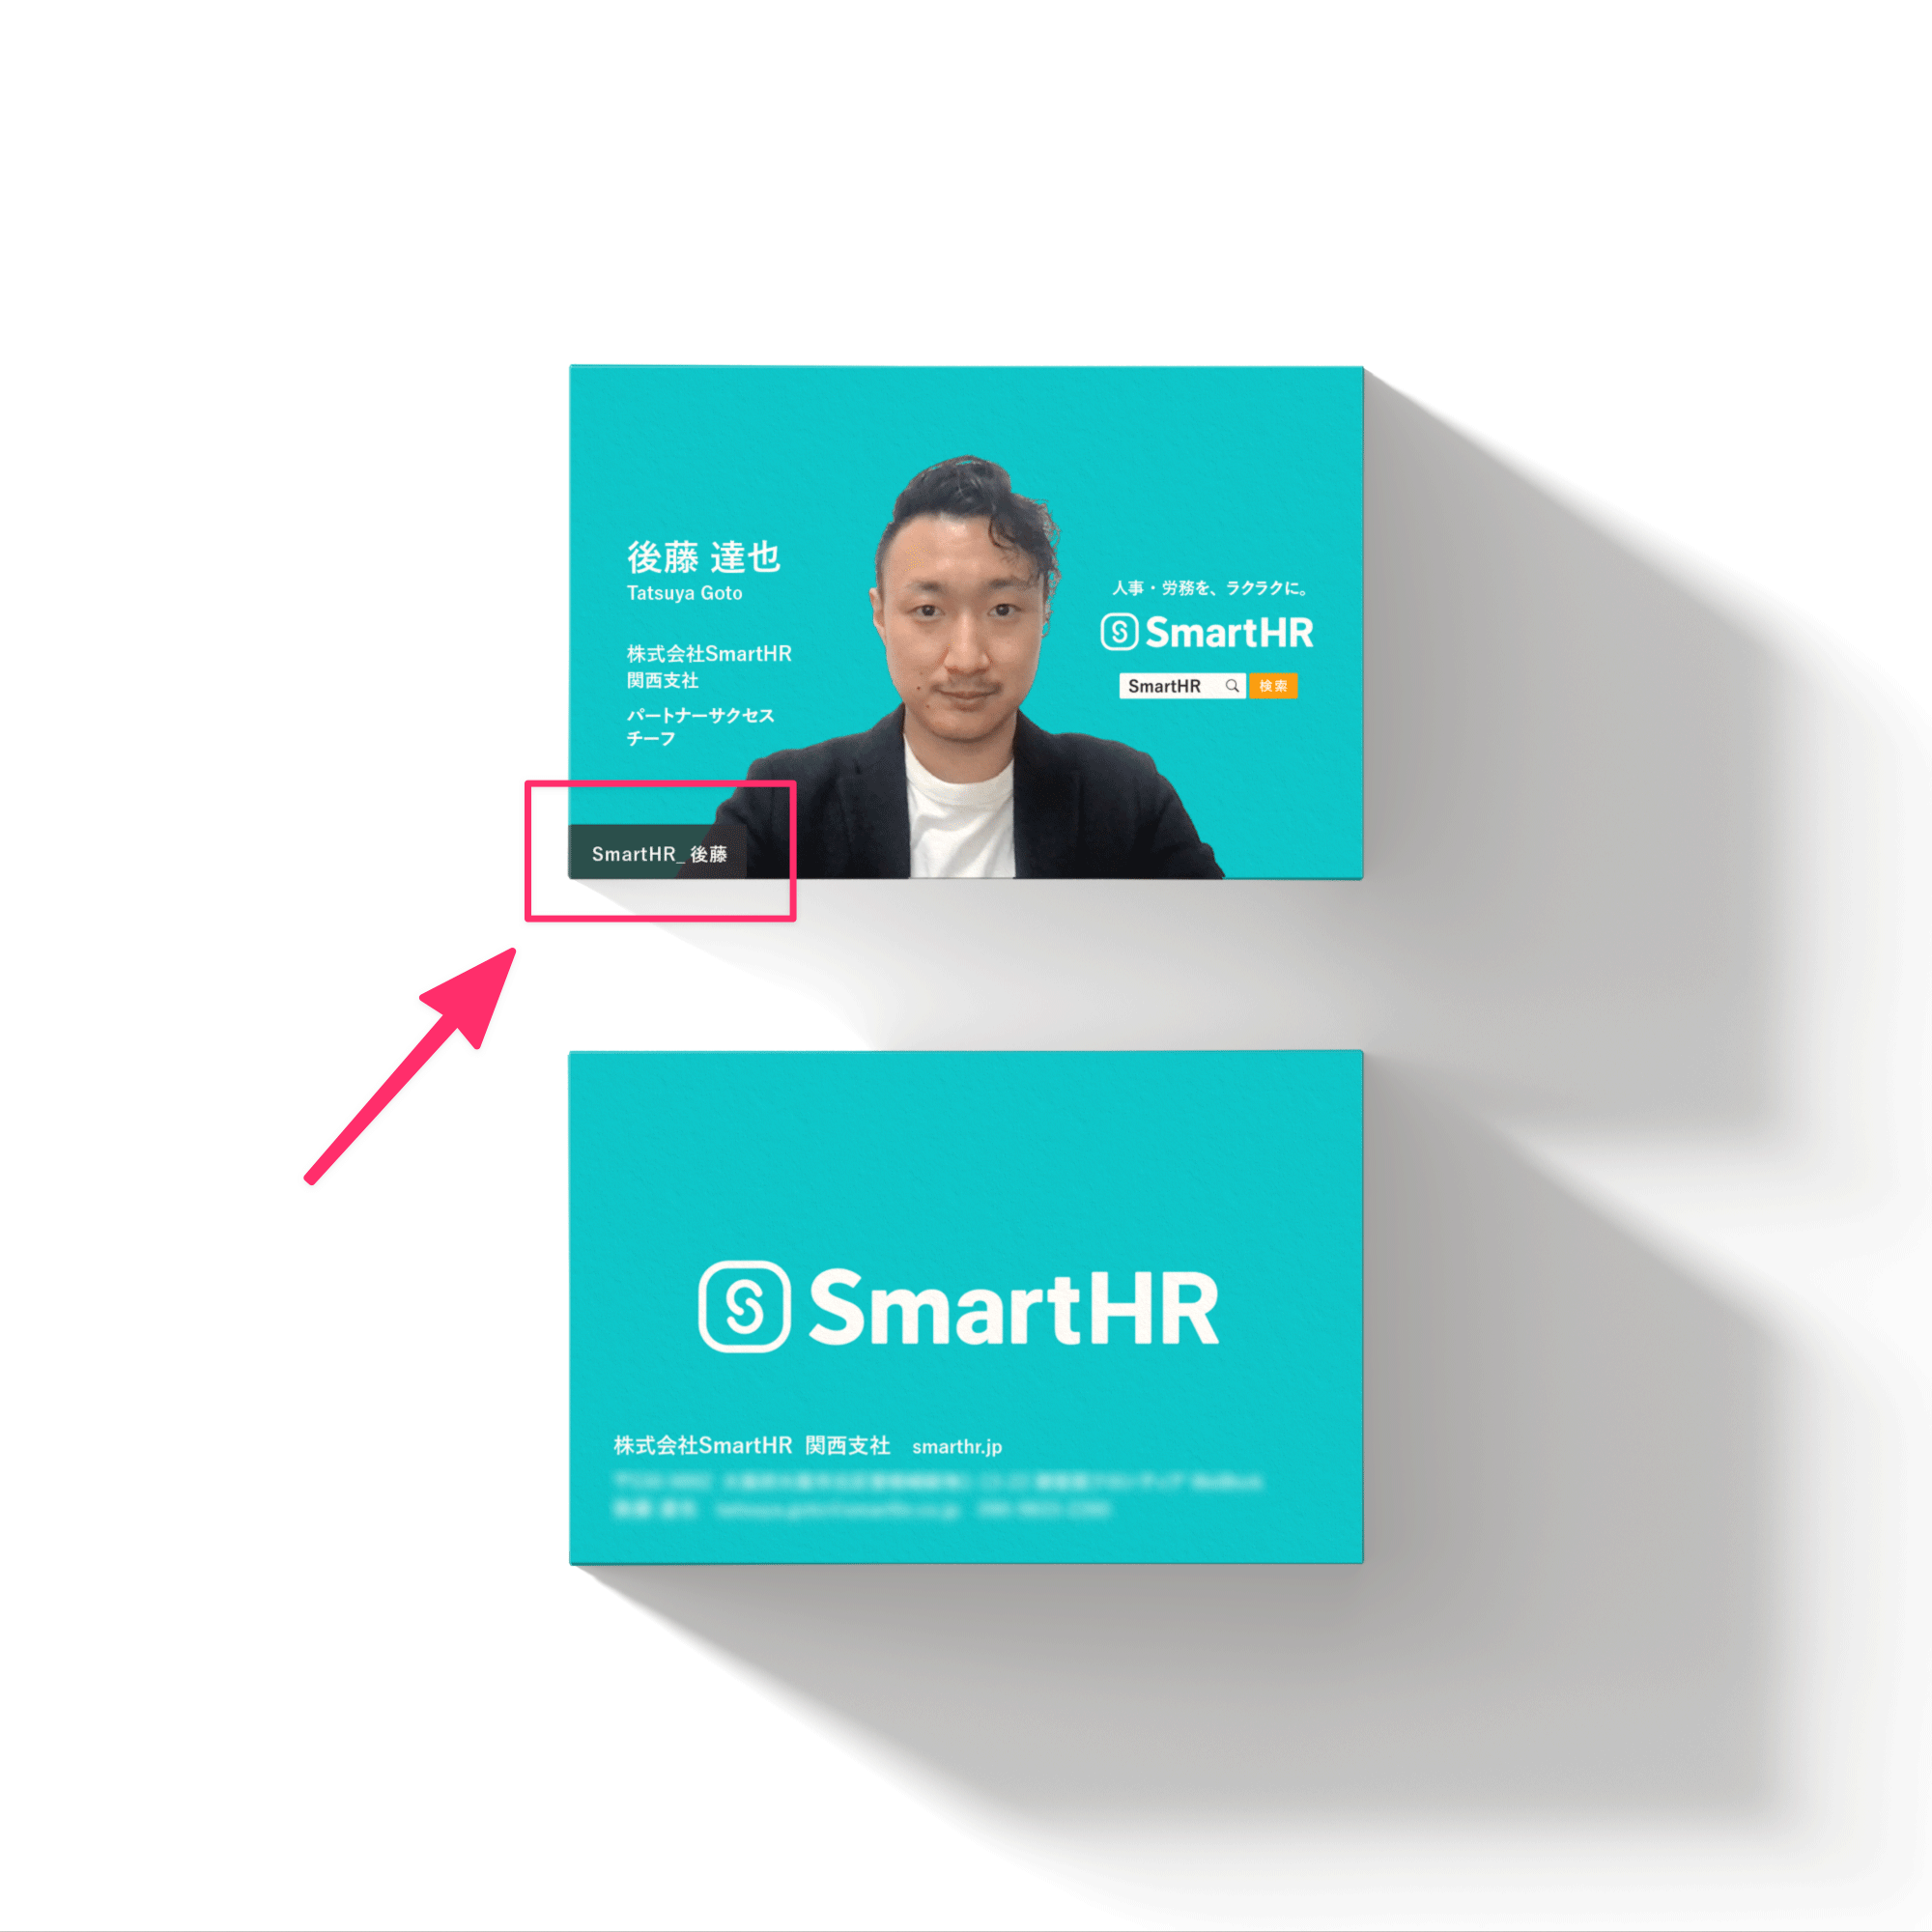 顔写真入り名刺の表面と裏面が1枚ずつ並んでいる写真。ウェブ会議同様に、顔写真の面の左下に「SmartHR_後藤」と名前が表示されている。